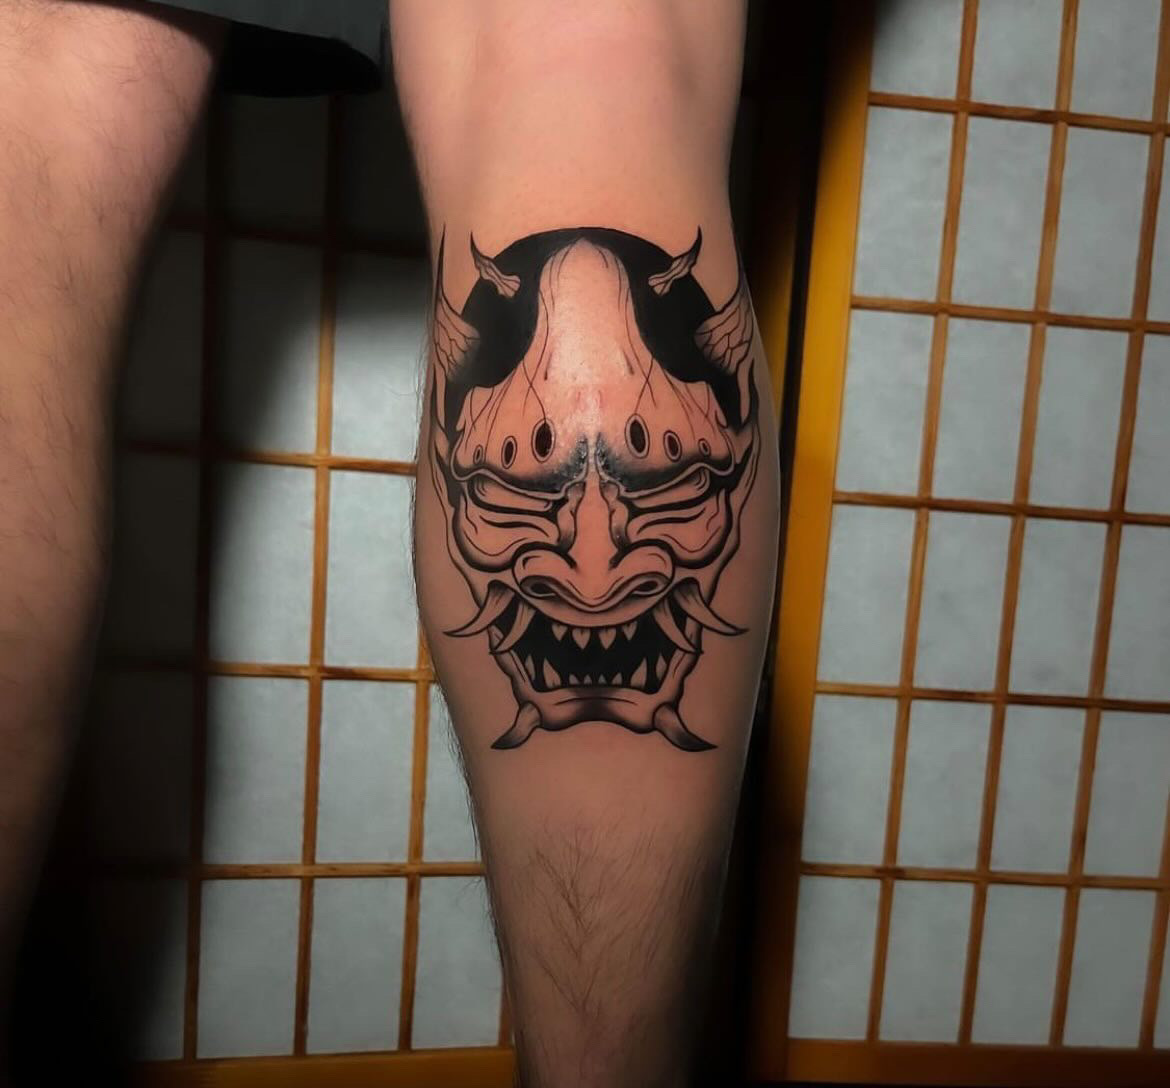 Tattoo Artist Alessandra Clivio tattoo in black and grey - demon skull calf tattoo